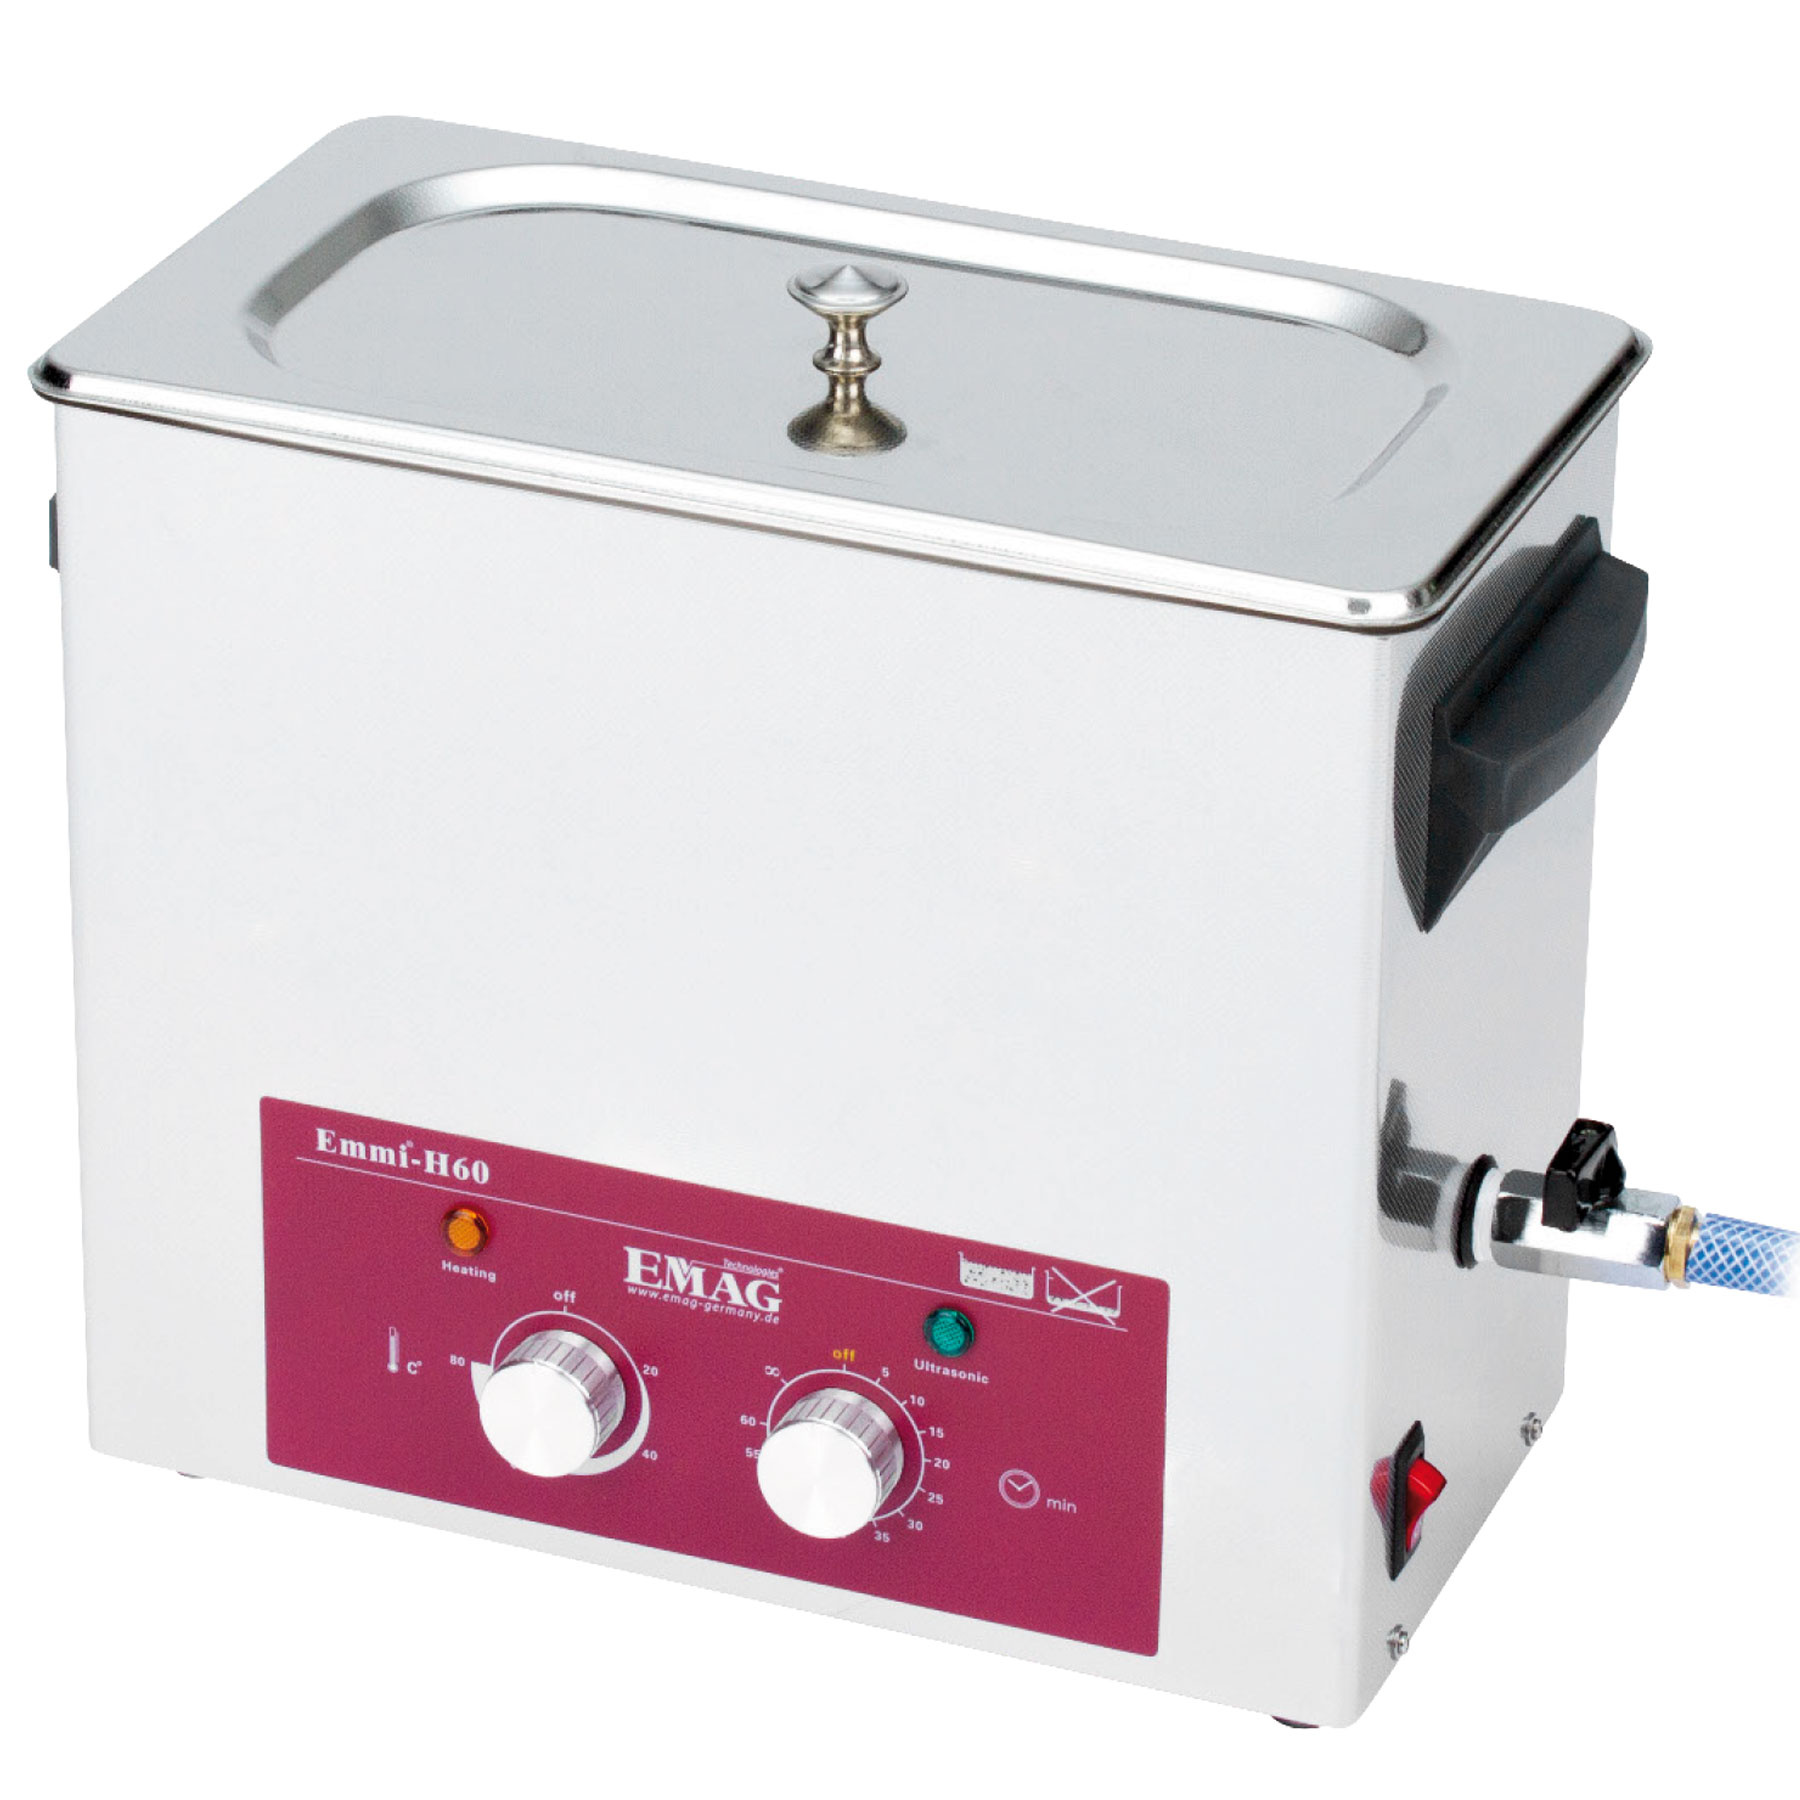 Pulitore ad ultrasuoni EMAG Emmi-H60 con rubinetto di scarico, 407,59